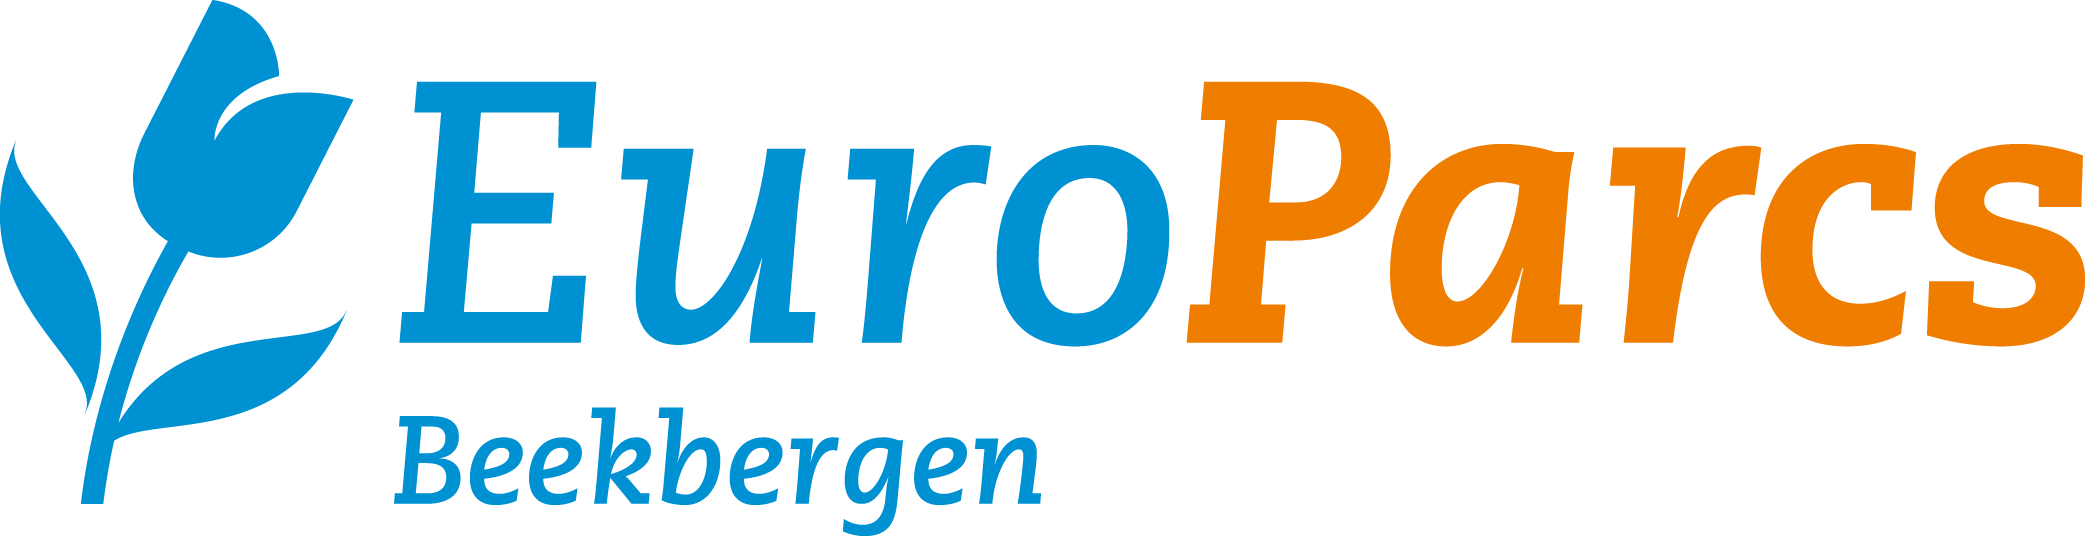 EuroParcs Beekbergen